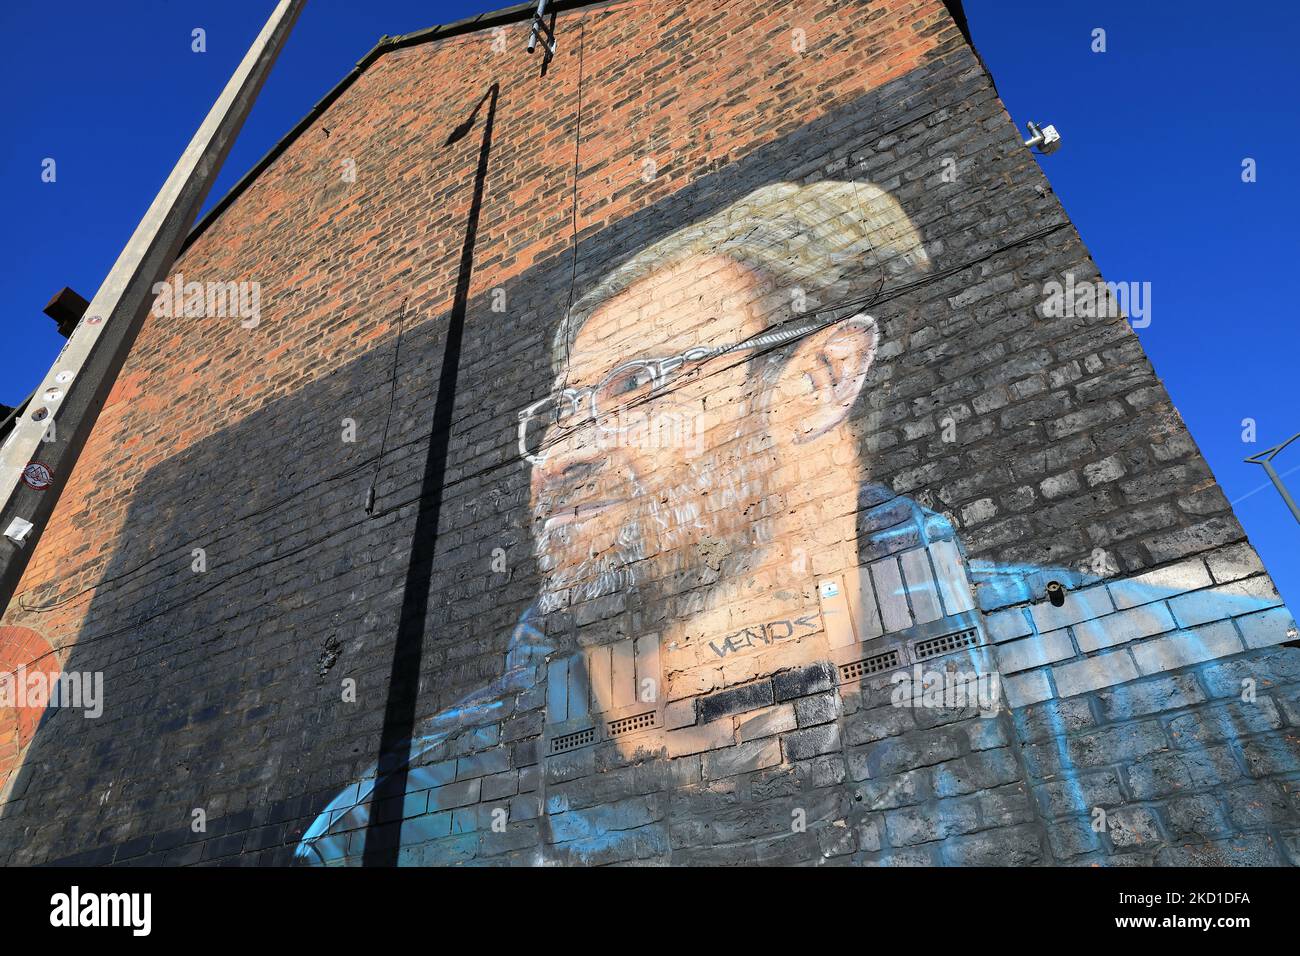 Wandgemälde von Jürgen Klopp, Manager des FC Liverpool, gemalt vom französischen Straßenkünstler AKSE P19, an der Jordan Street, im Baltischen Dreieck, Großbritannien Stockfoto